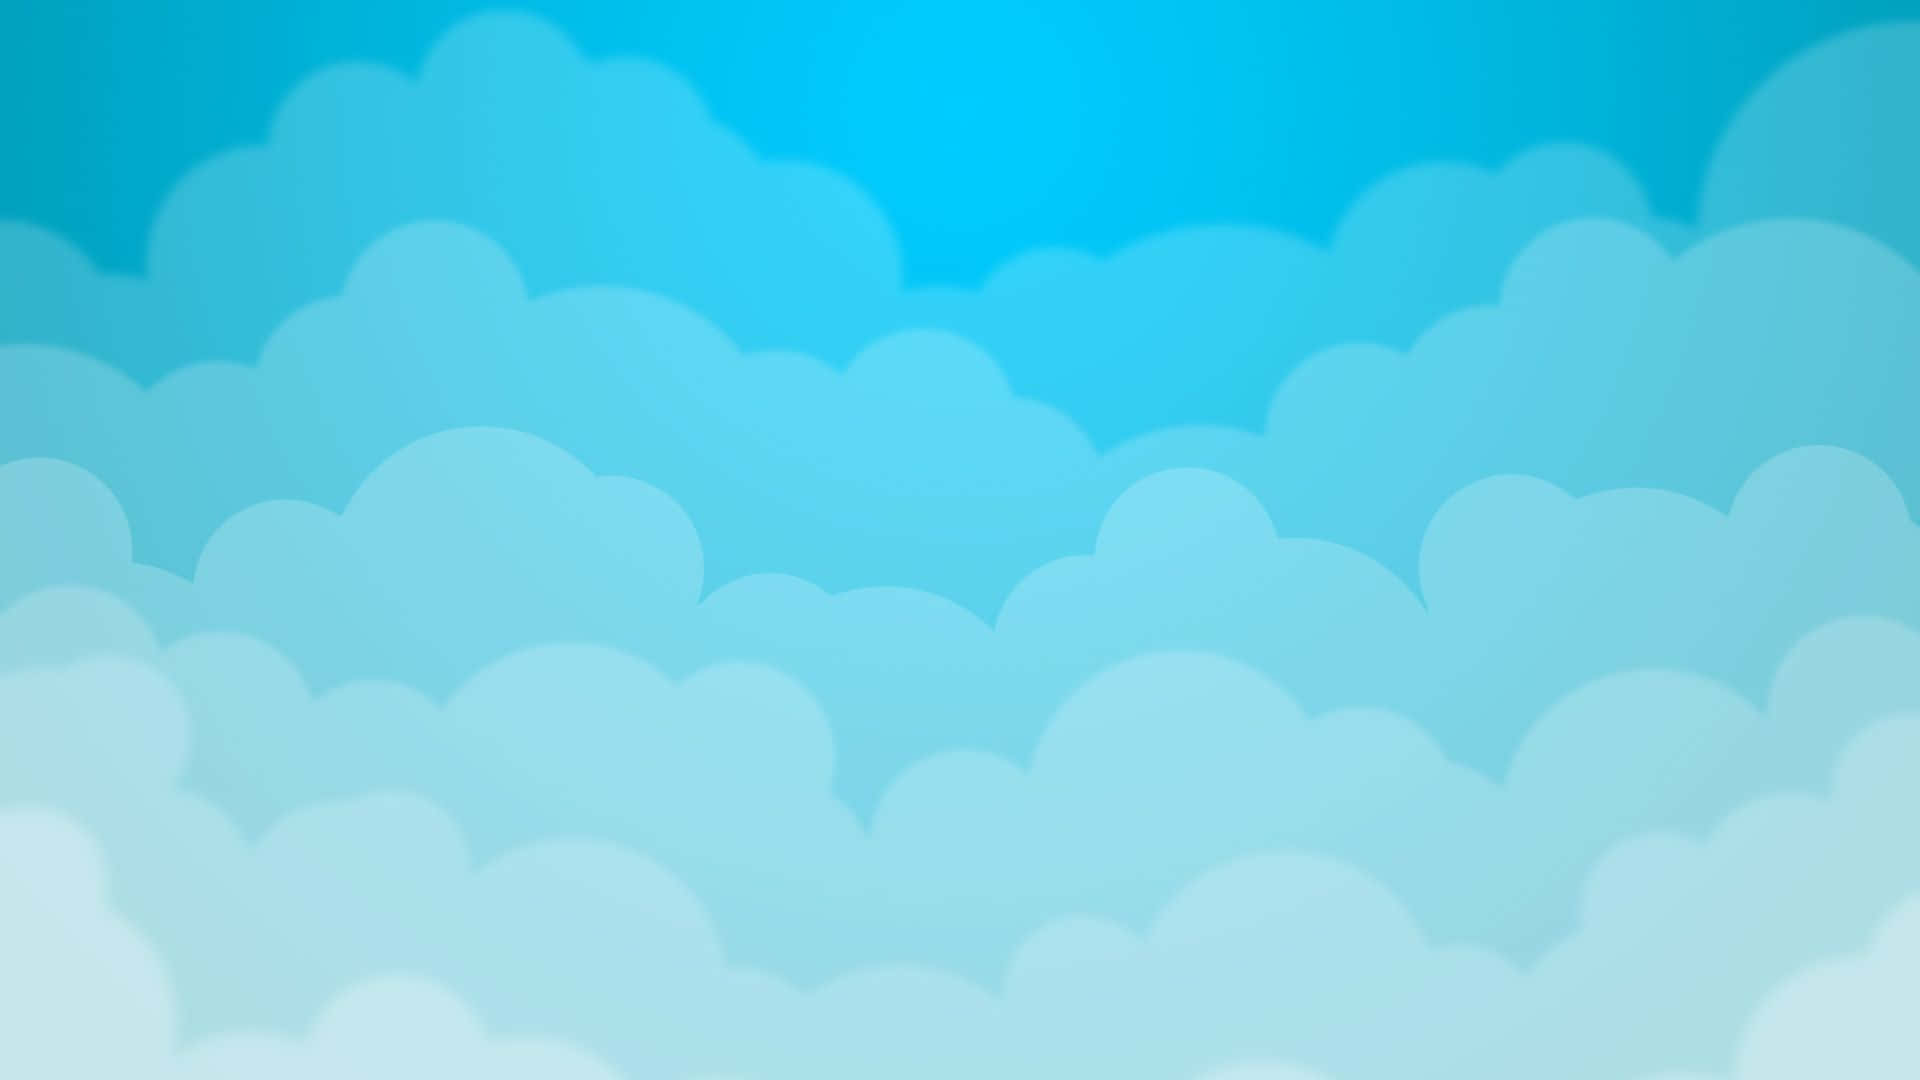 Mirahacia Arriba Y Contempla La Belleza De Las Nubes Azules